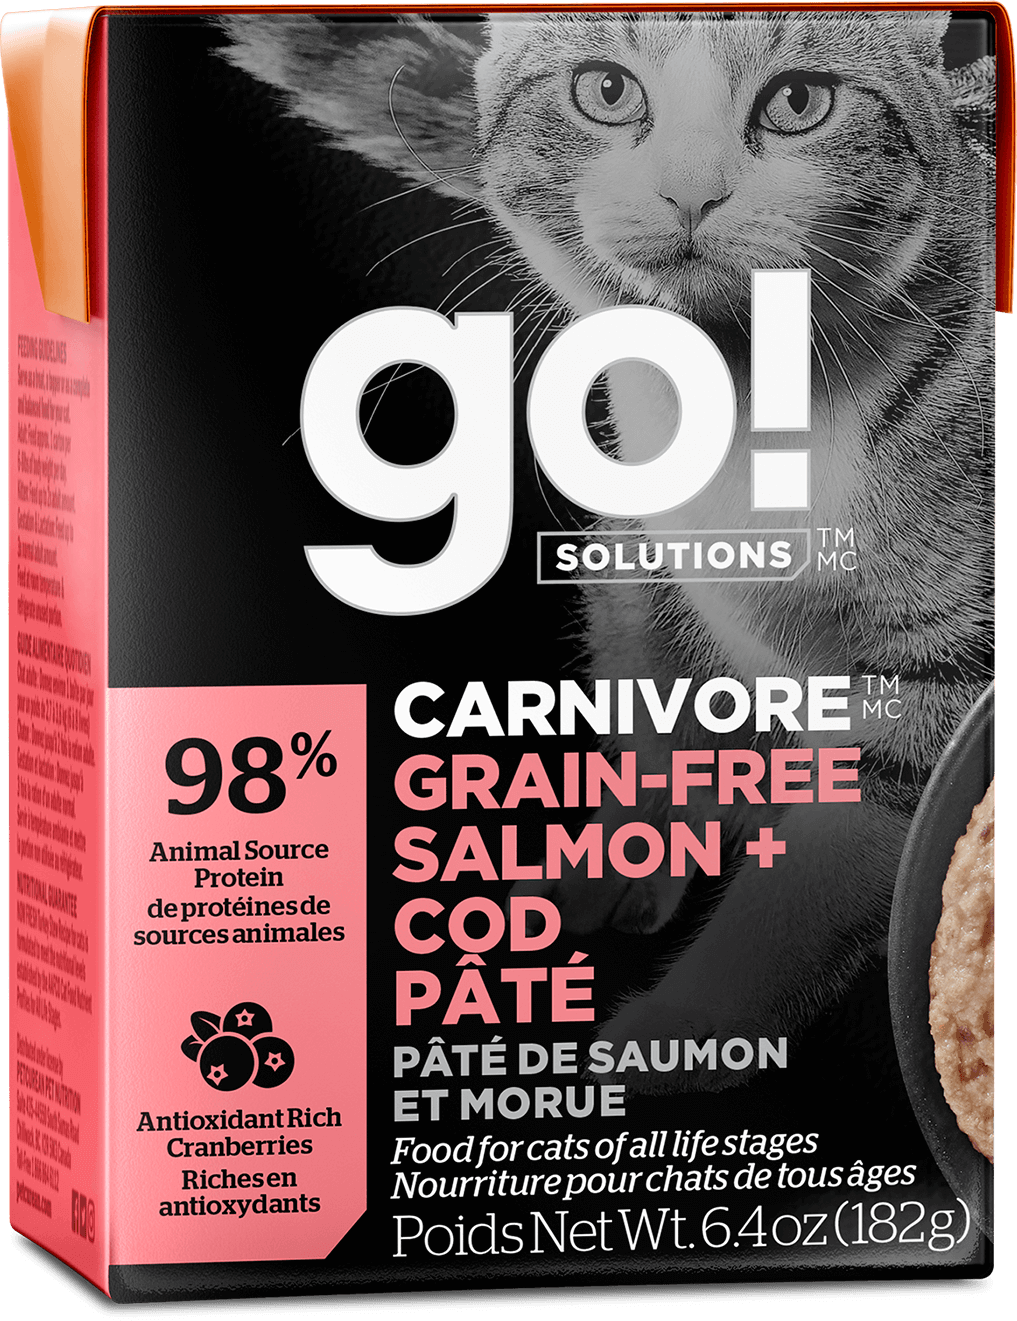 GO! Solutions Carnivore Grain-Free Salmon + Cod Pâté